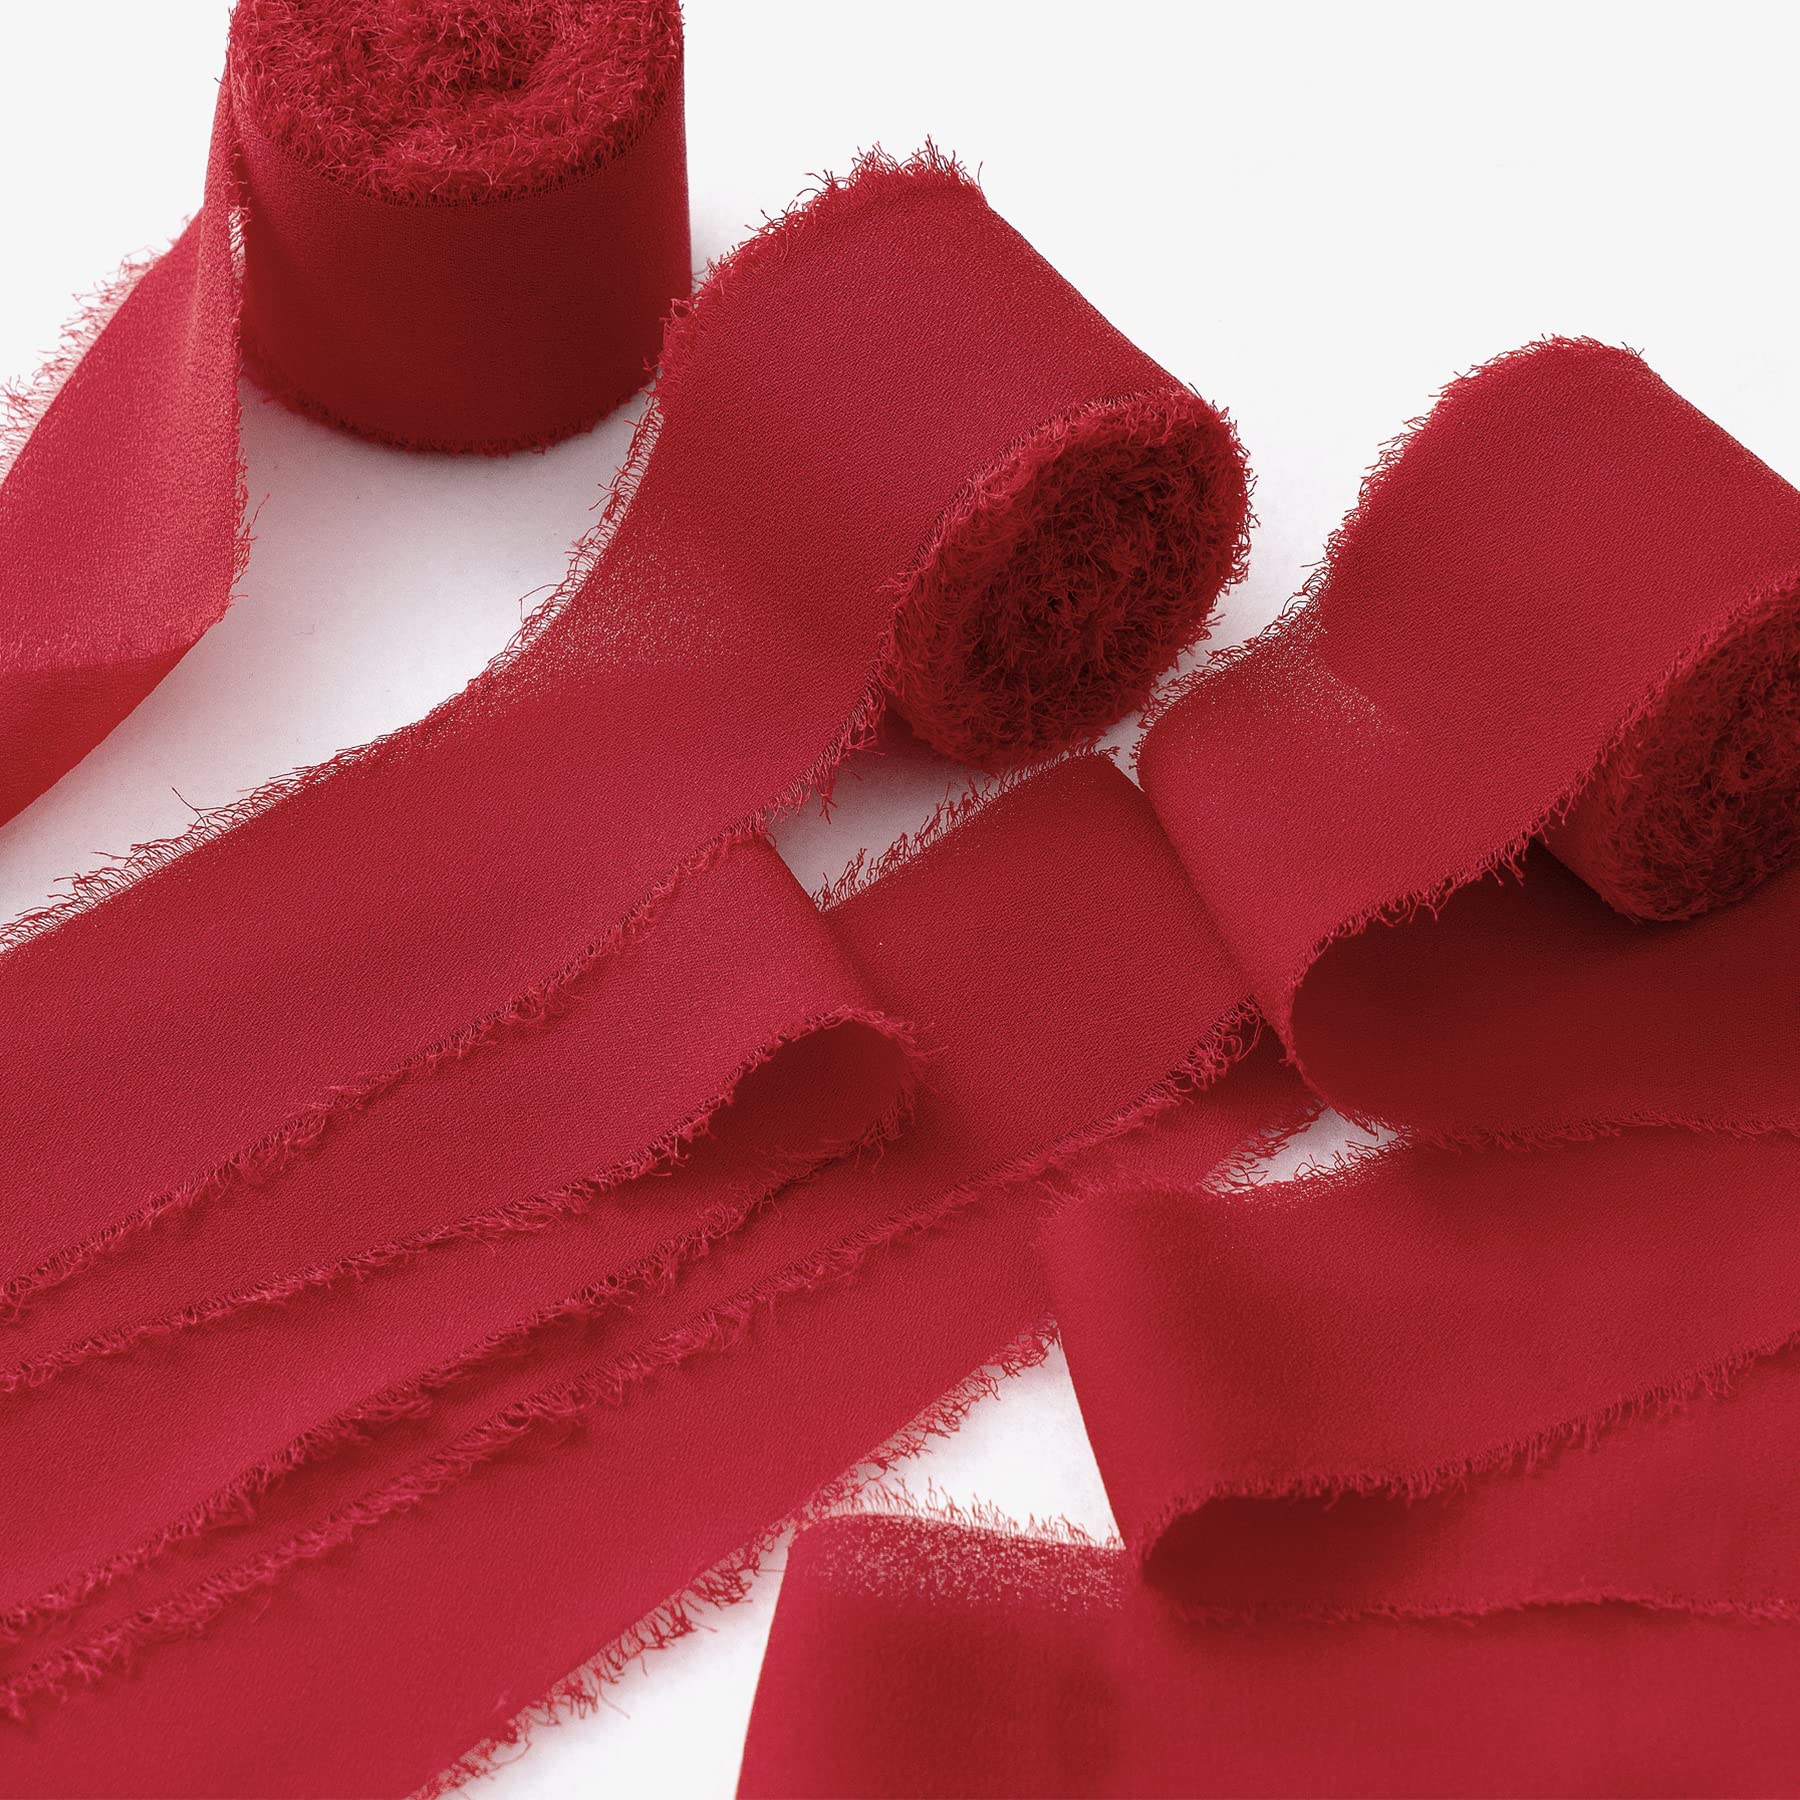 JEDIA Valentine's Ribbon, 3 Rolls Red Chiffon Ribbons, 1.5